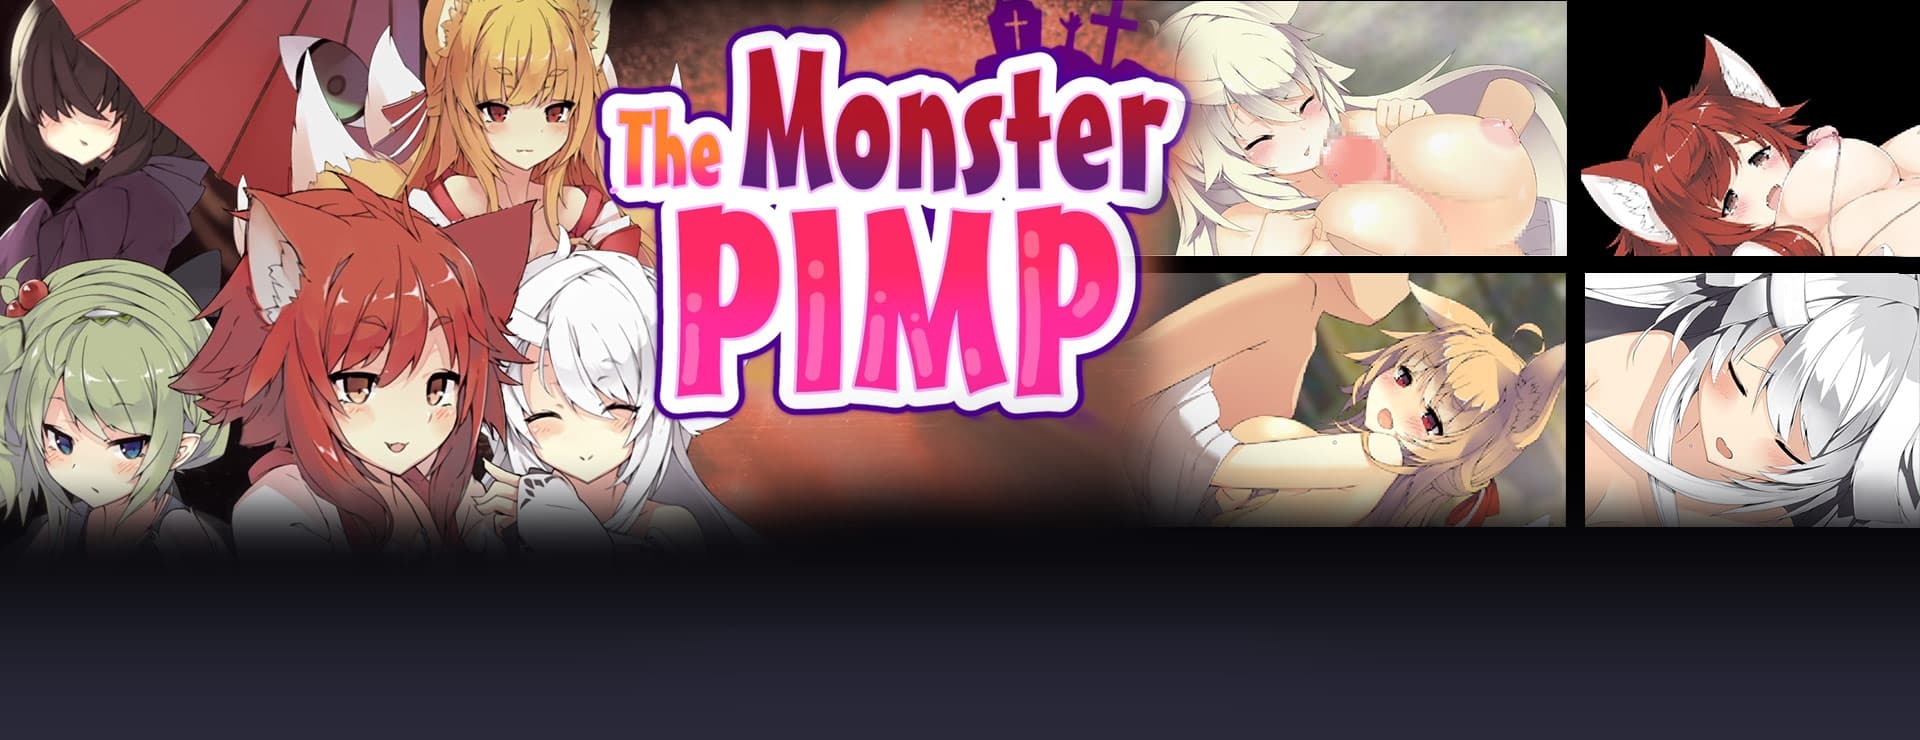 The Monster PIMP - RPG Game